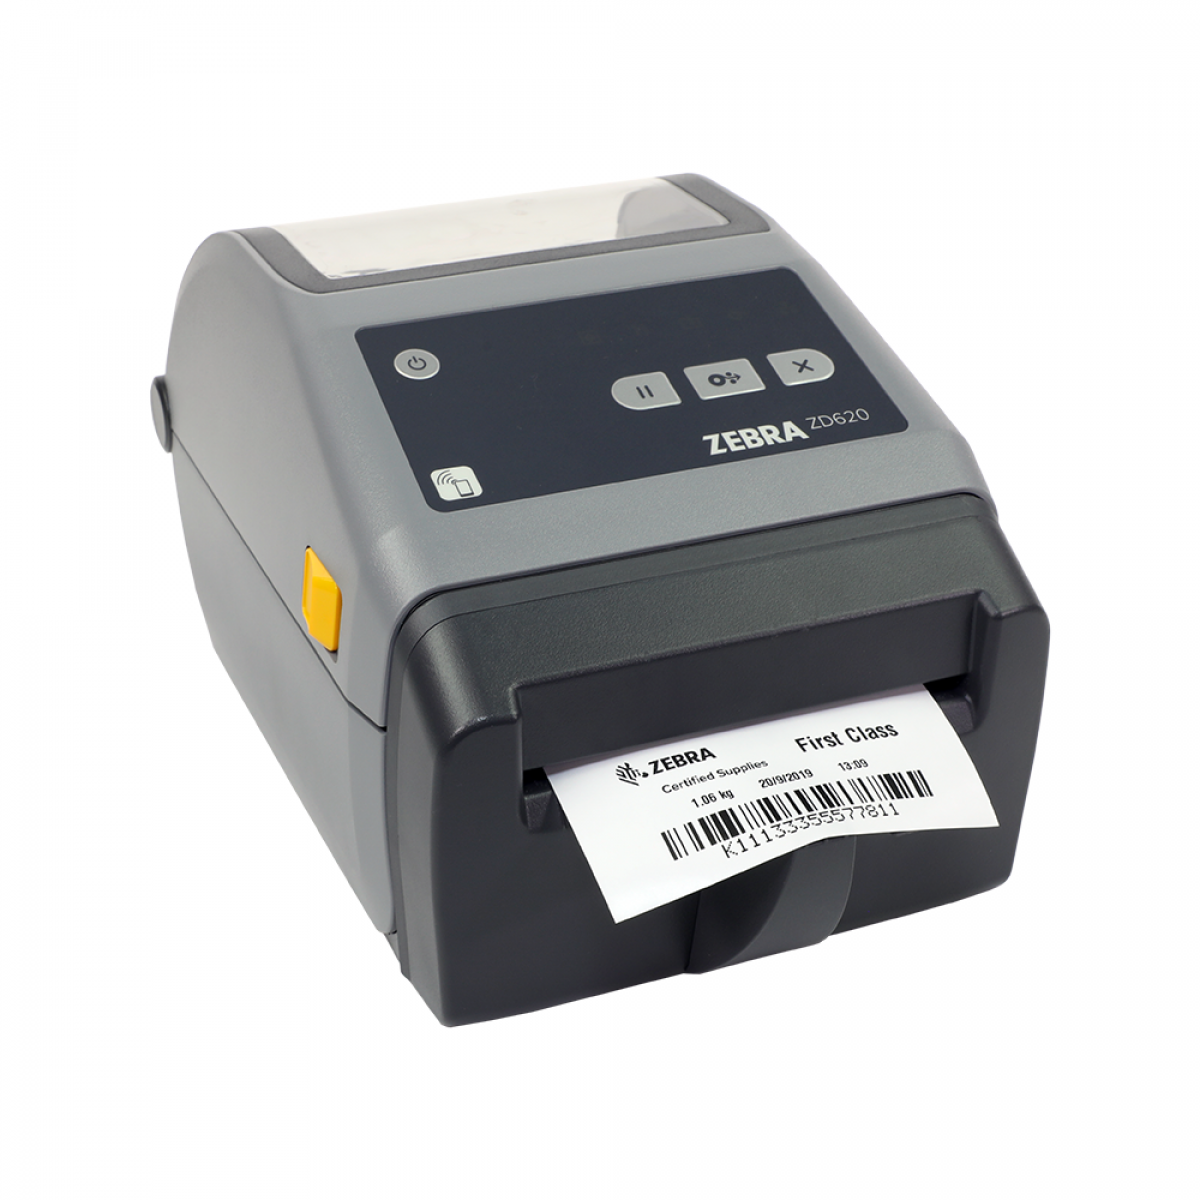 Zebra ZD620 thermal transfer printer & linerless media